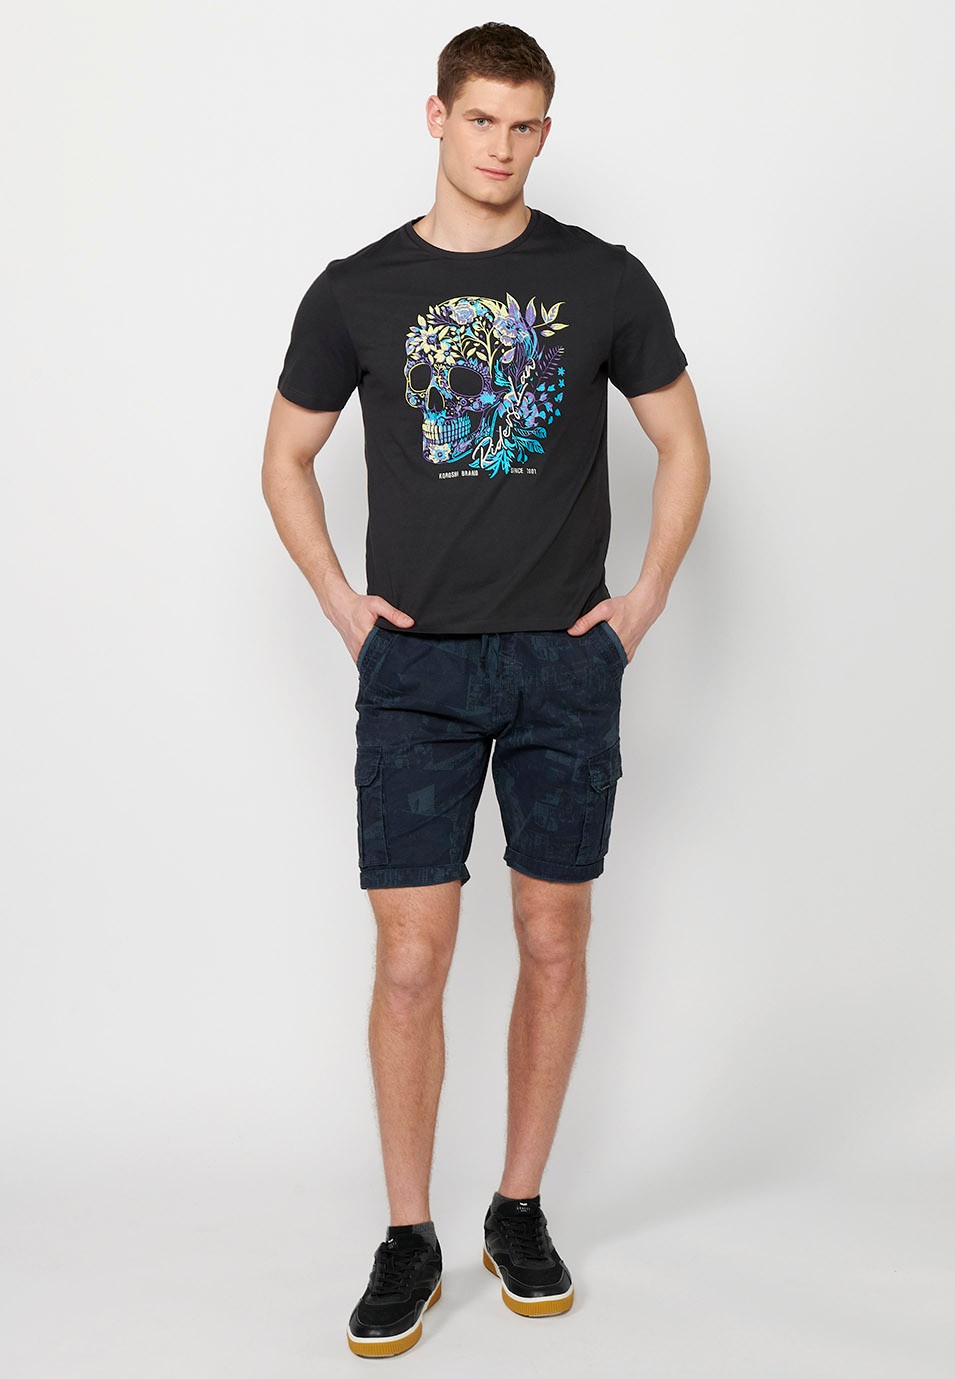 T-shirt en coton à manches courtes, imprimé devant, coloris bleu pour homme